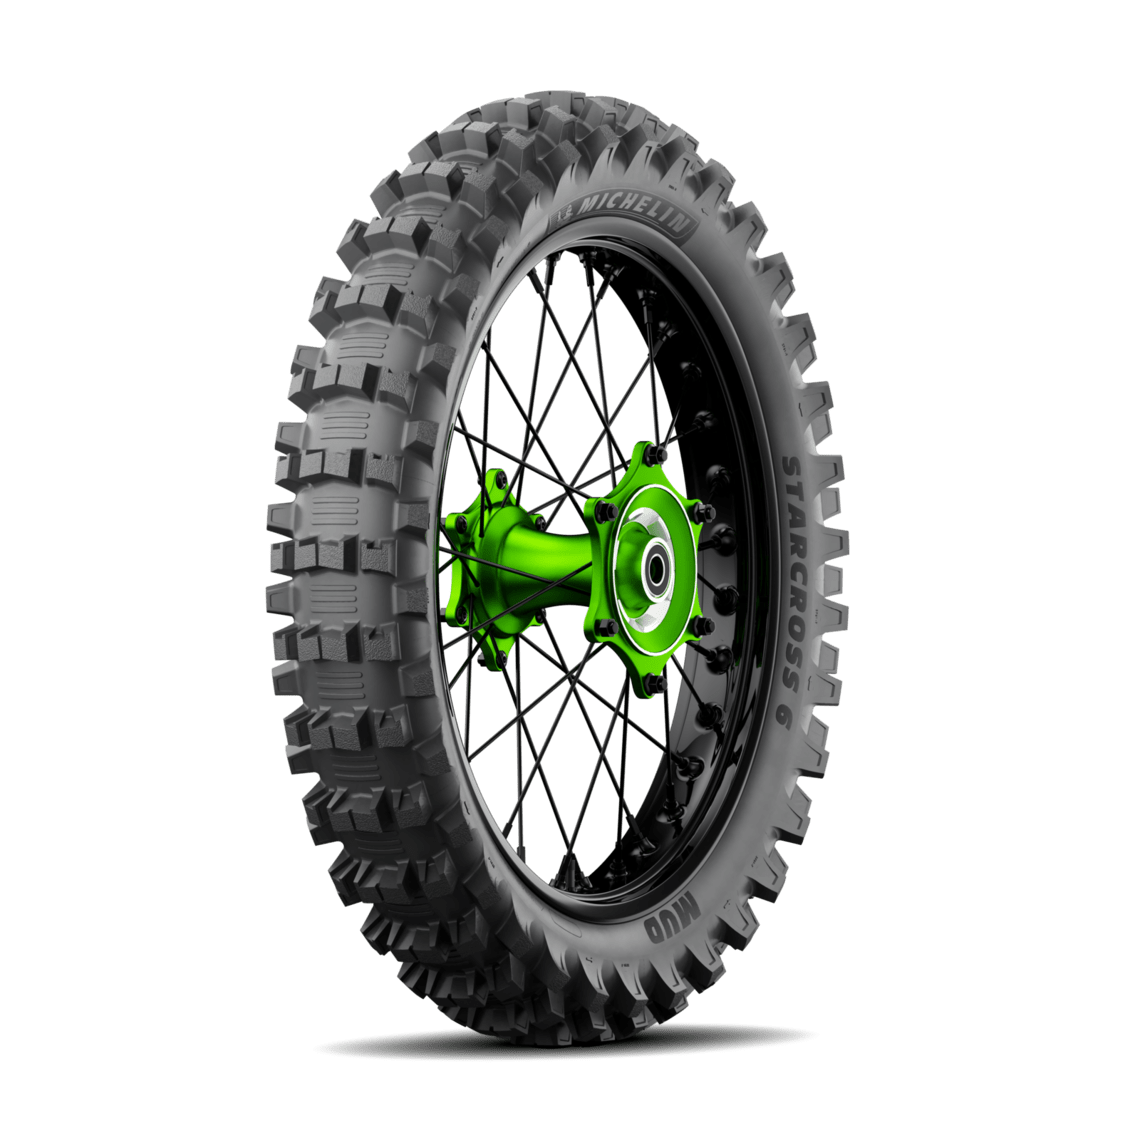 Une nouvelle gamme de pneus MX chez Michelin